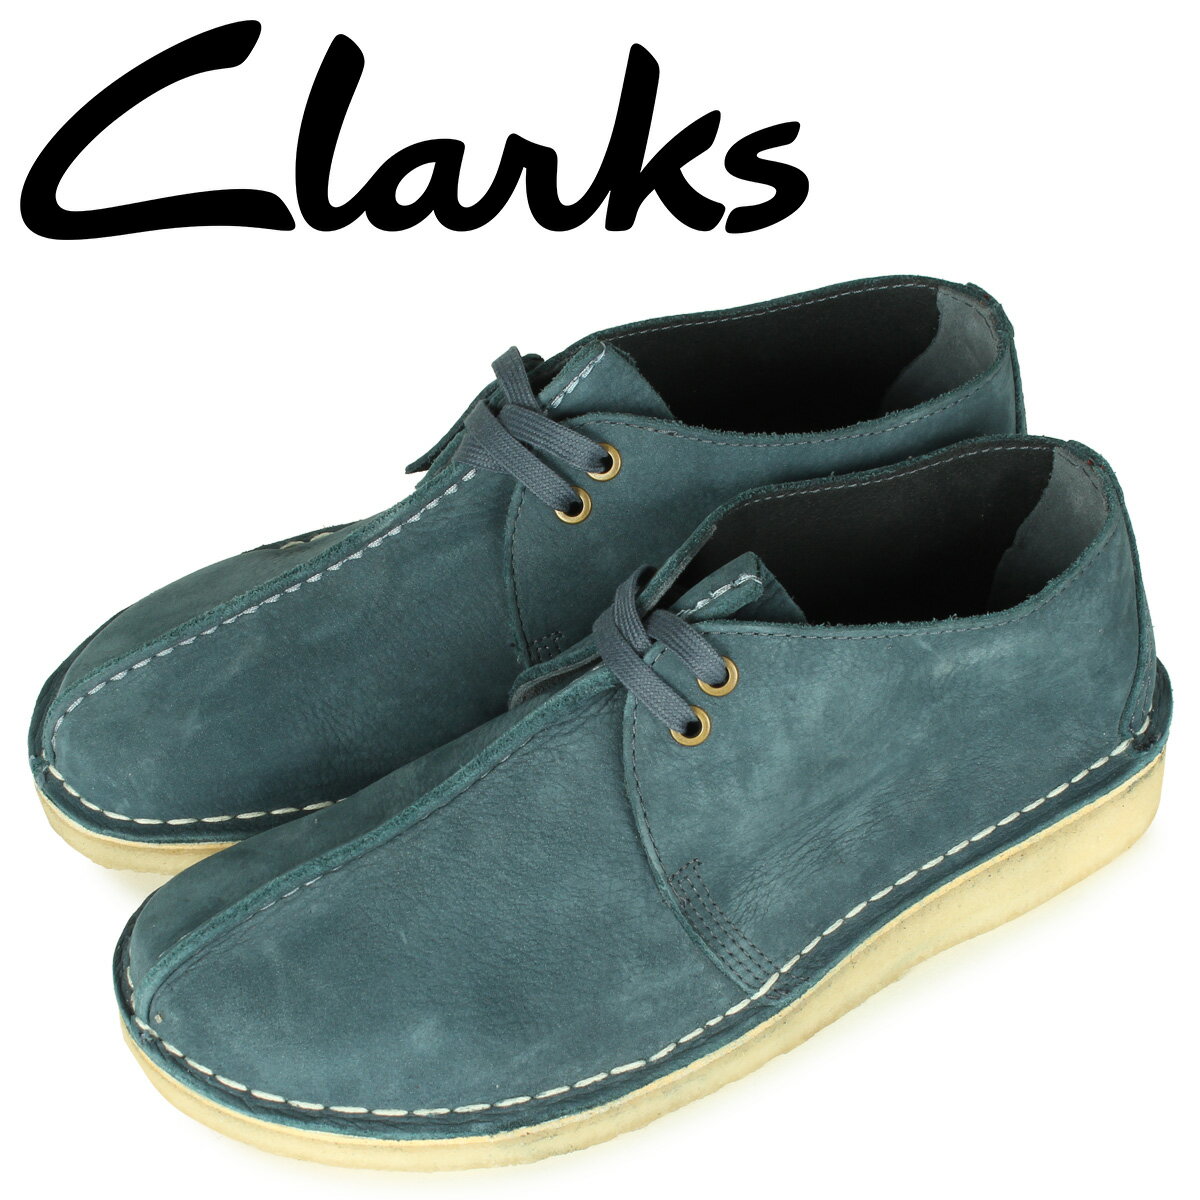 クラークス Clarks デザートトレック ブーツ メンズ レザー DESERT TREK ブルー 26160225